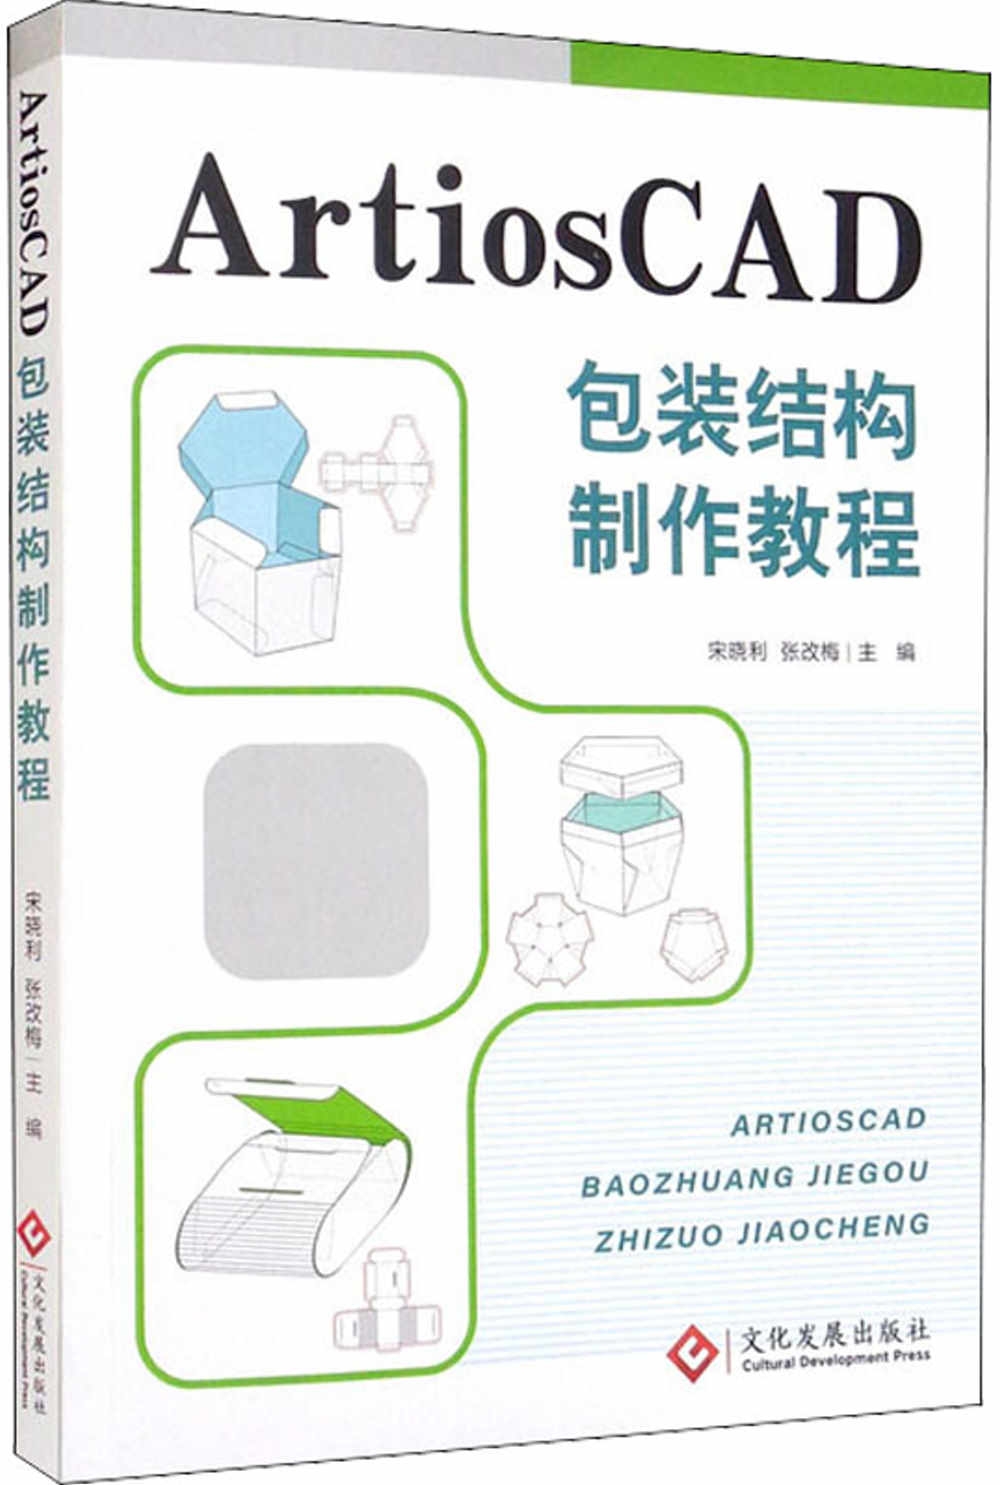 ArtiosCAD包裝結構製作教程